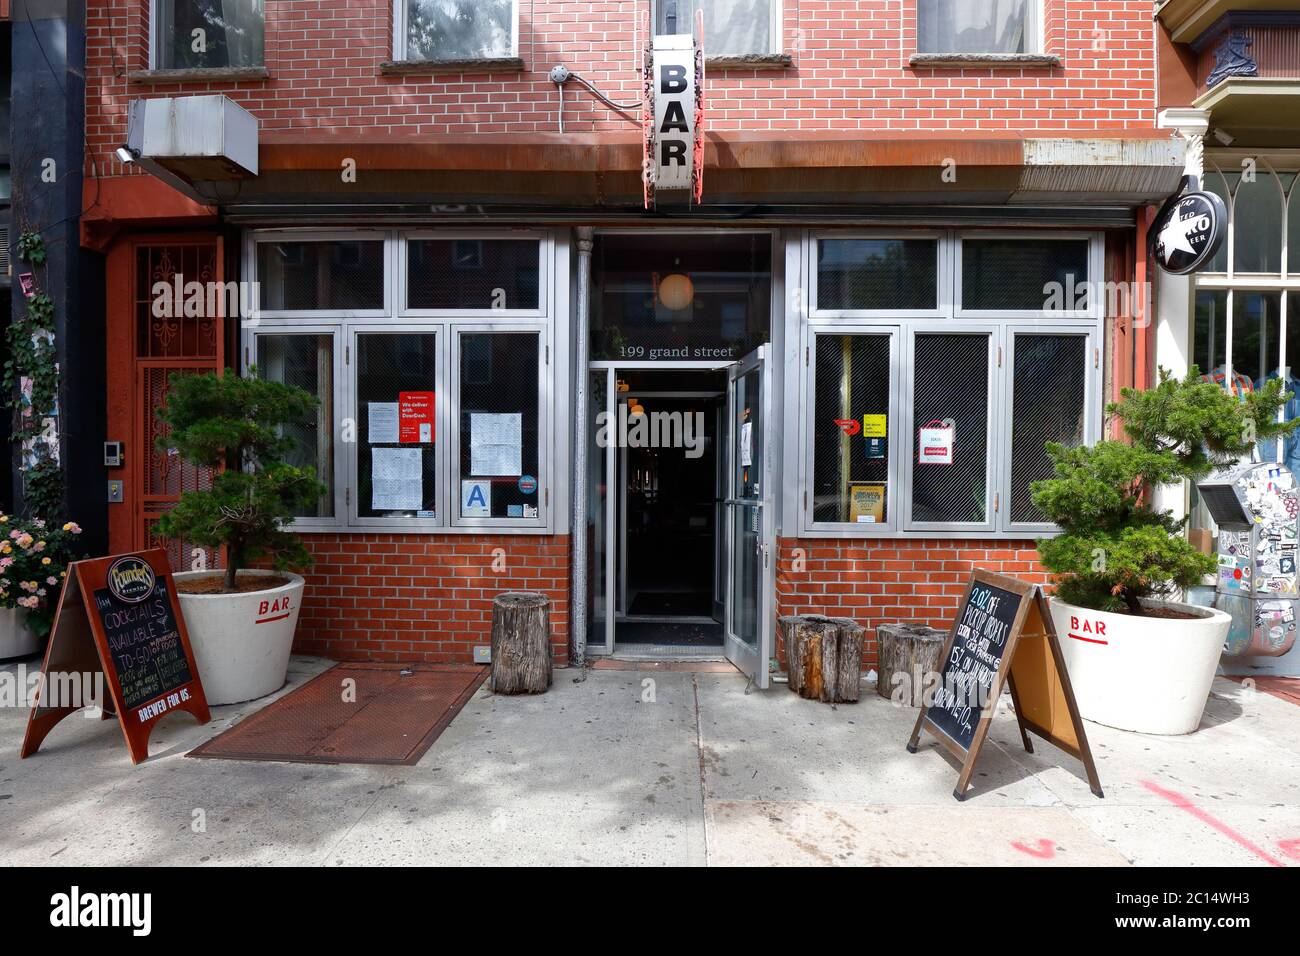 Dokebi Bar and Grill, 199 Grand Street, Brooklyn, New York. NYC-Schaufensterfoto eines koreanischen bbq-Restaurants im Stadtteil Williamsburg. Stockfoto